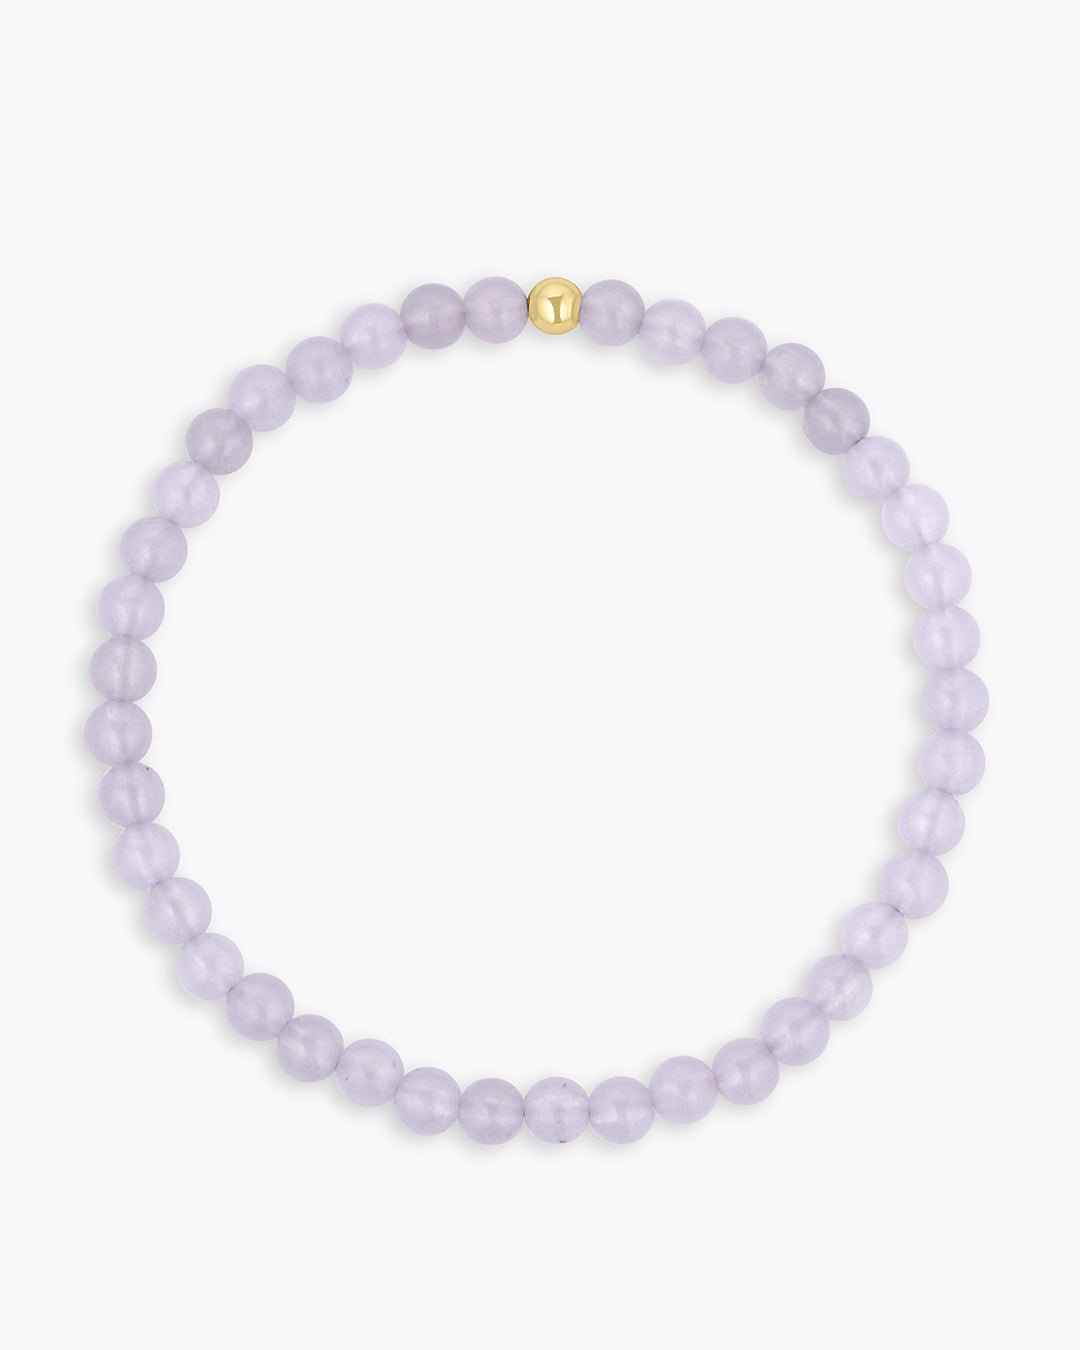 Carter Gemstone Bracelet || option::Gold Plated, Lavender Jade